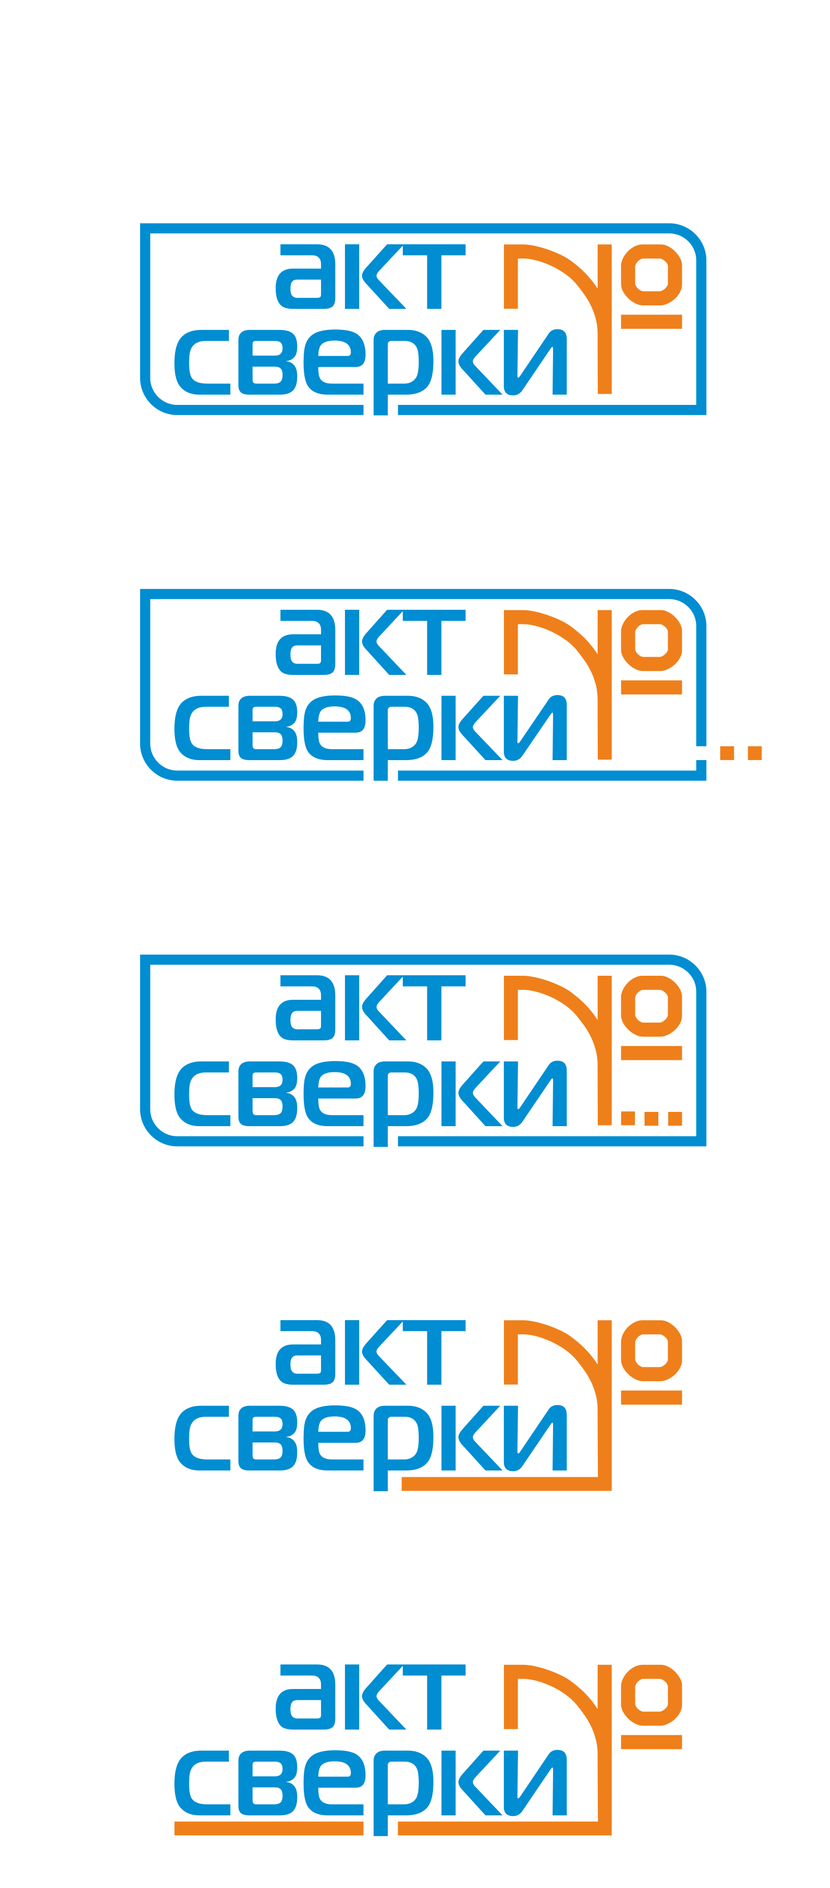 Немного изменённые варианты (не стал перегружать лишними деталями). - Разработка логотипа для сайта aktsverki.ru